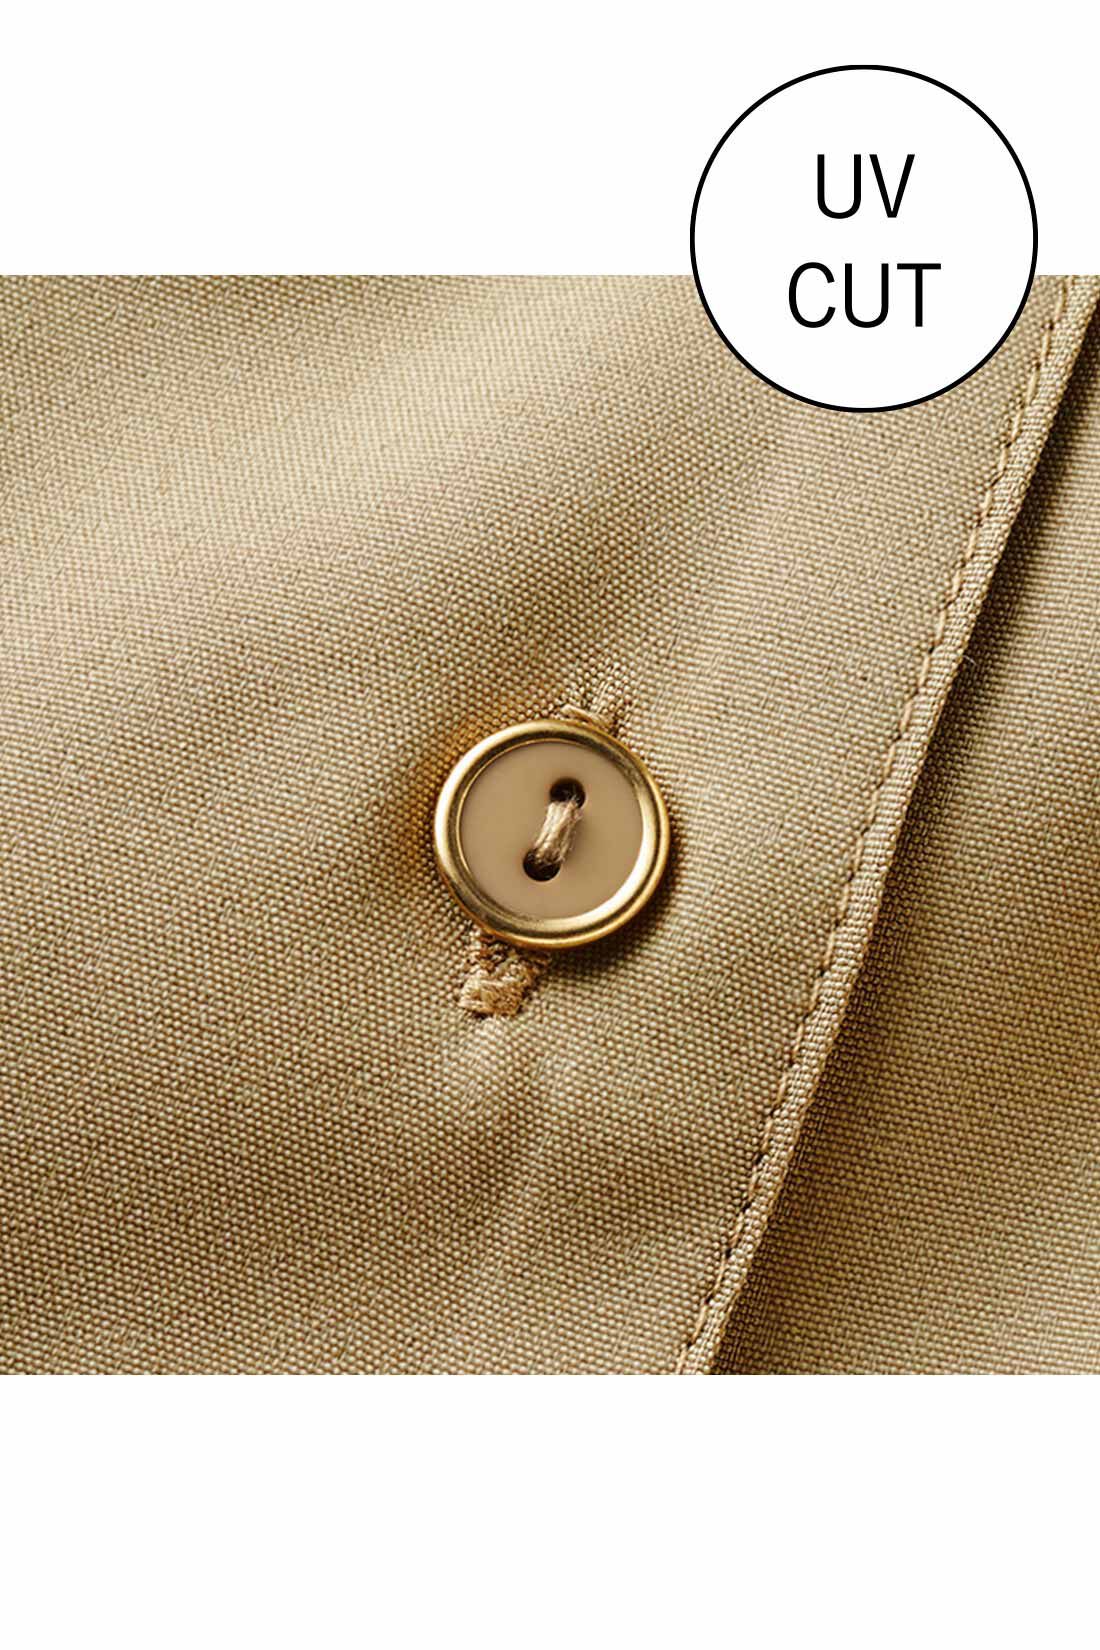 IEDIT|IEDIT[イディット]　一枚で好印象に着映える きれい見えワンピース〈チャコールブラック〉|しわになりにくく、洗濯機でお手入れ簡単なきれい見え素材。ゴールドの縁飾りボタンがアクセント。